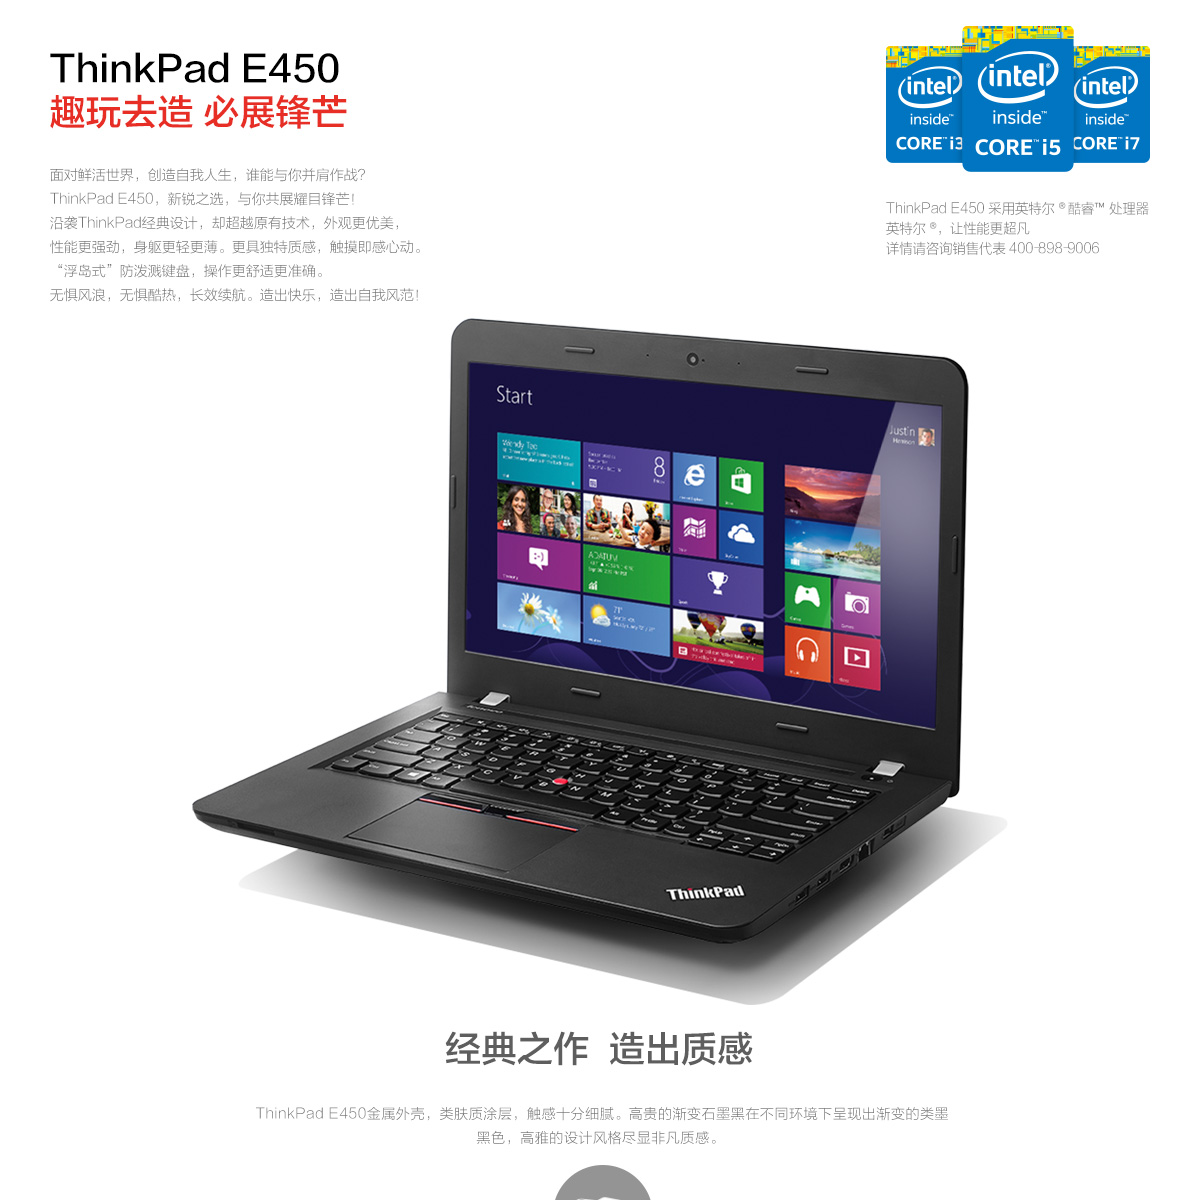 Thinkpad E450